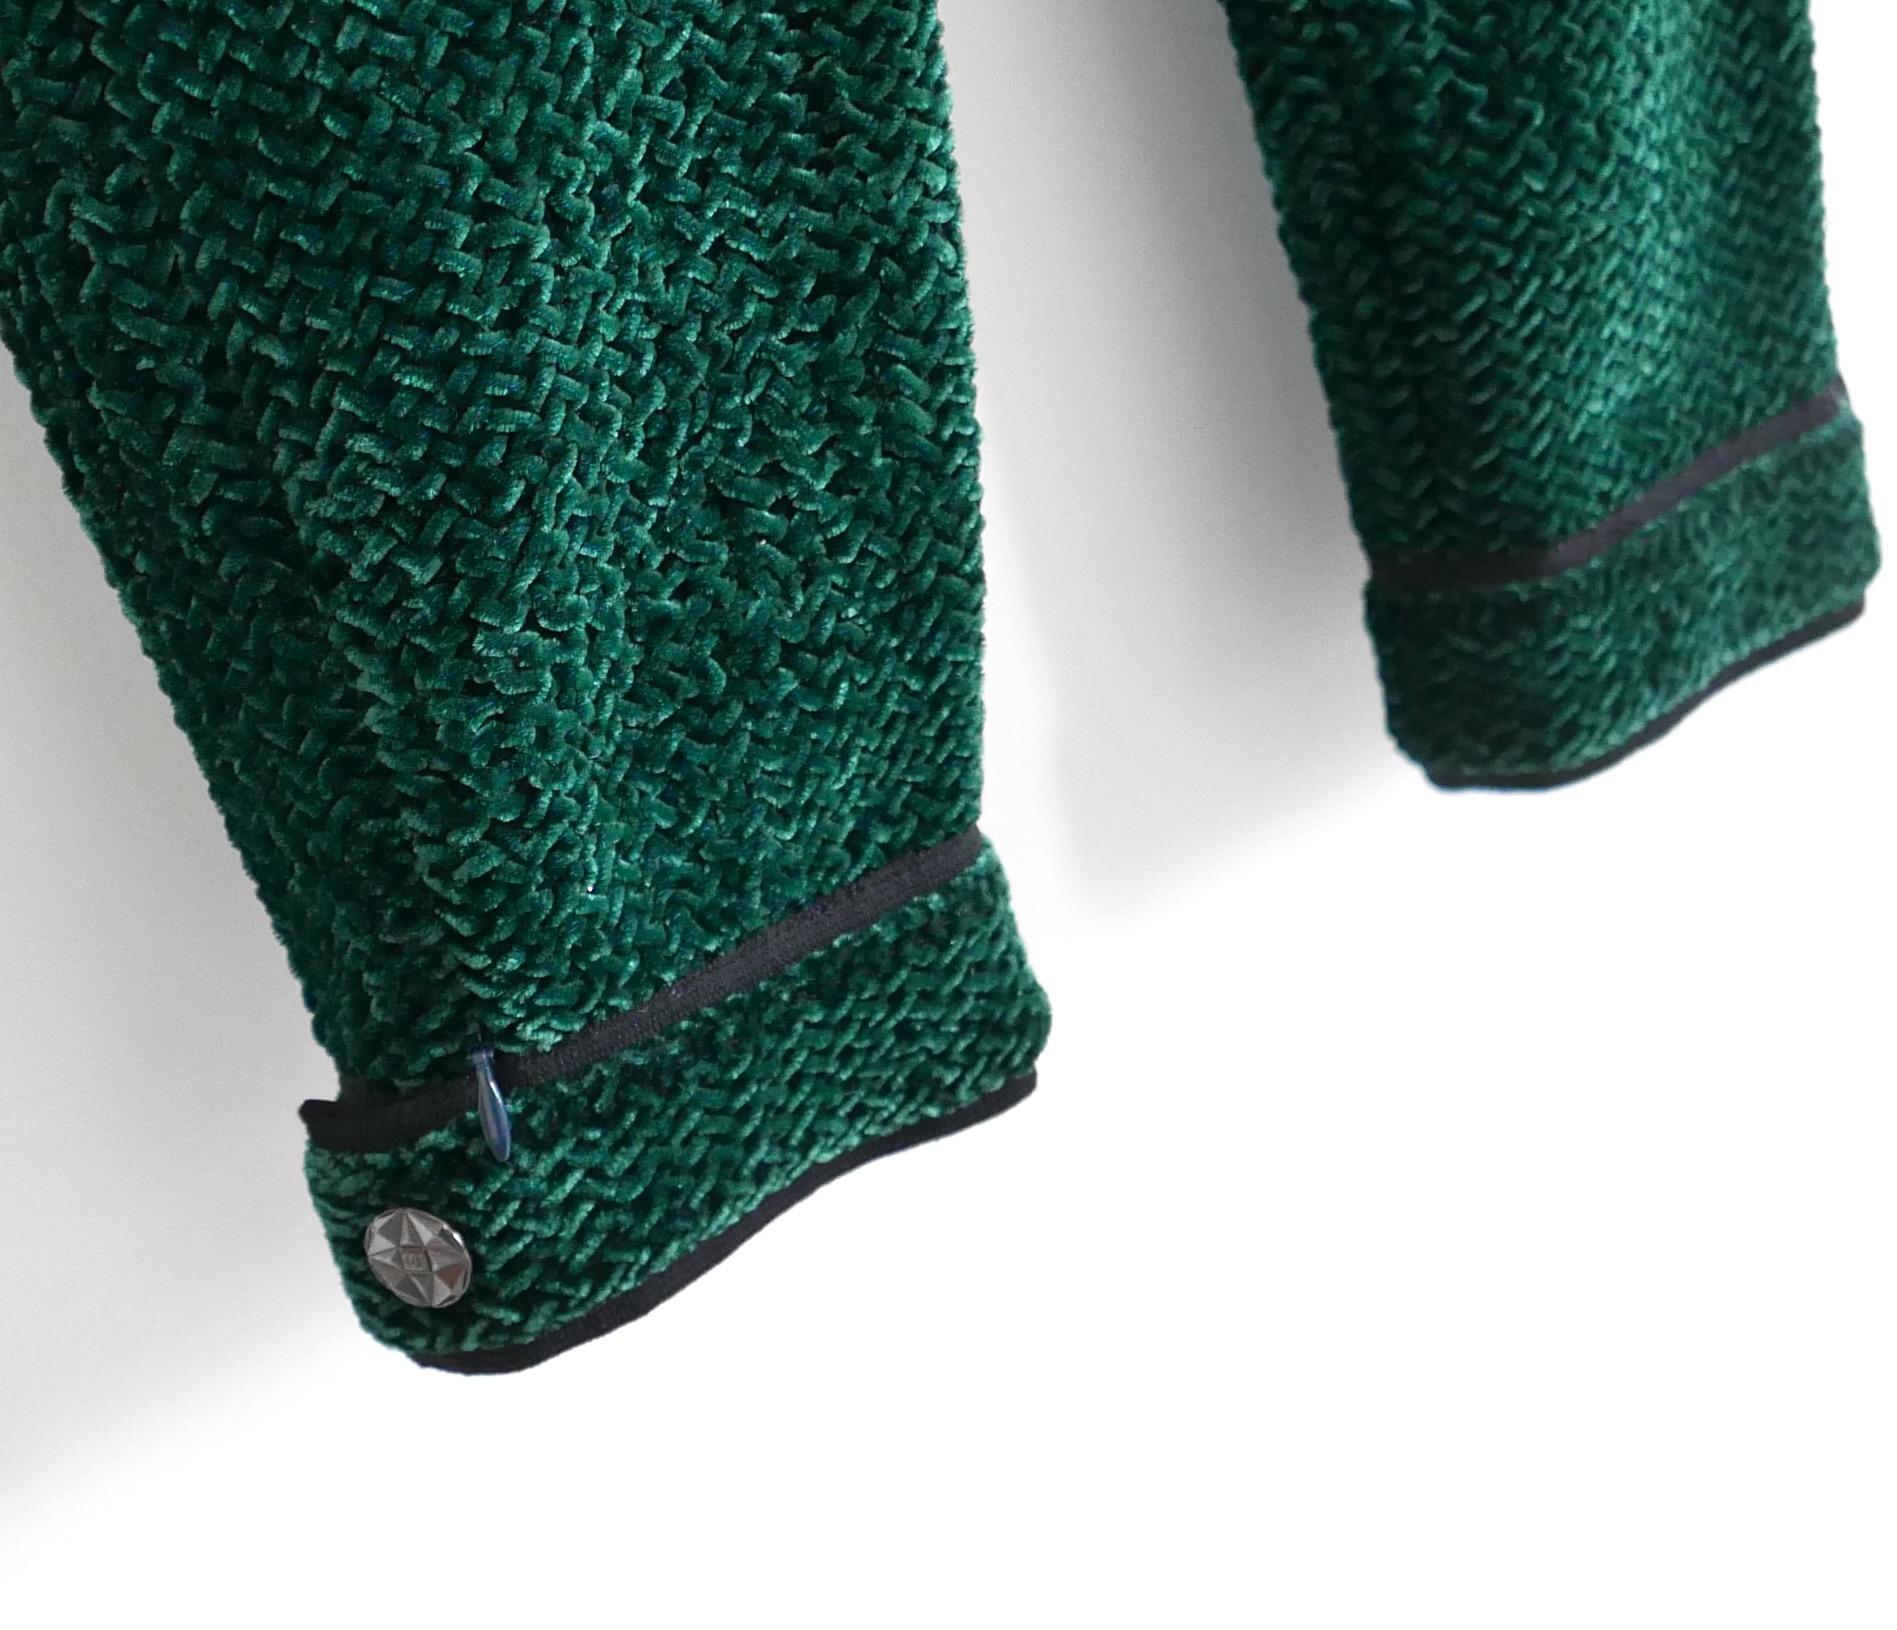 Étonnant pantalon pousse-pédale Chanel de la collection automne 2012. look 17 sur le défilé. Non porté, avec un échantillon de tissu de rechange inclus. 
Réalisé en velours extensible de viscose/soie vert émeraude superbement texturé, avec passepoil